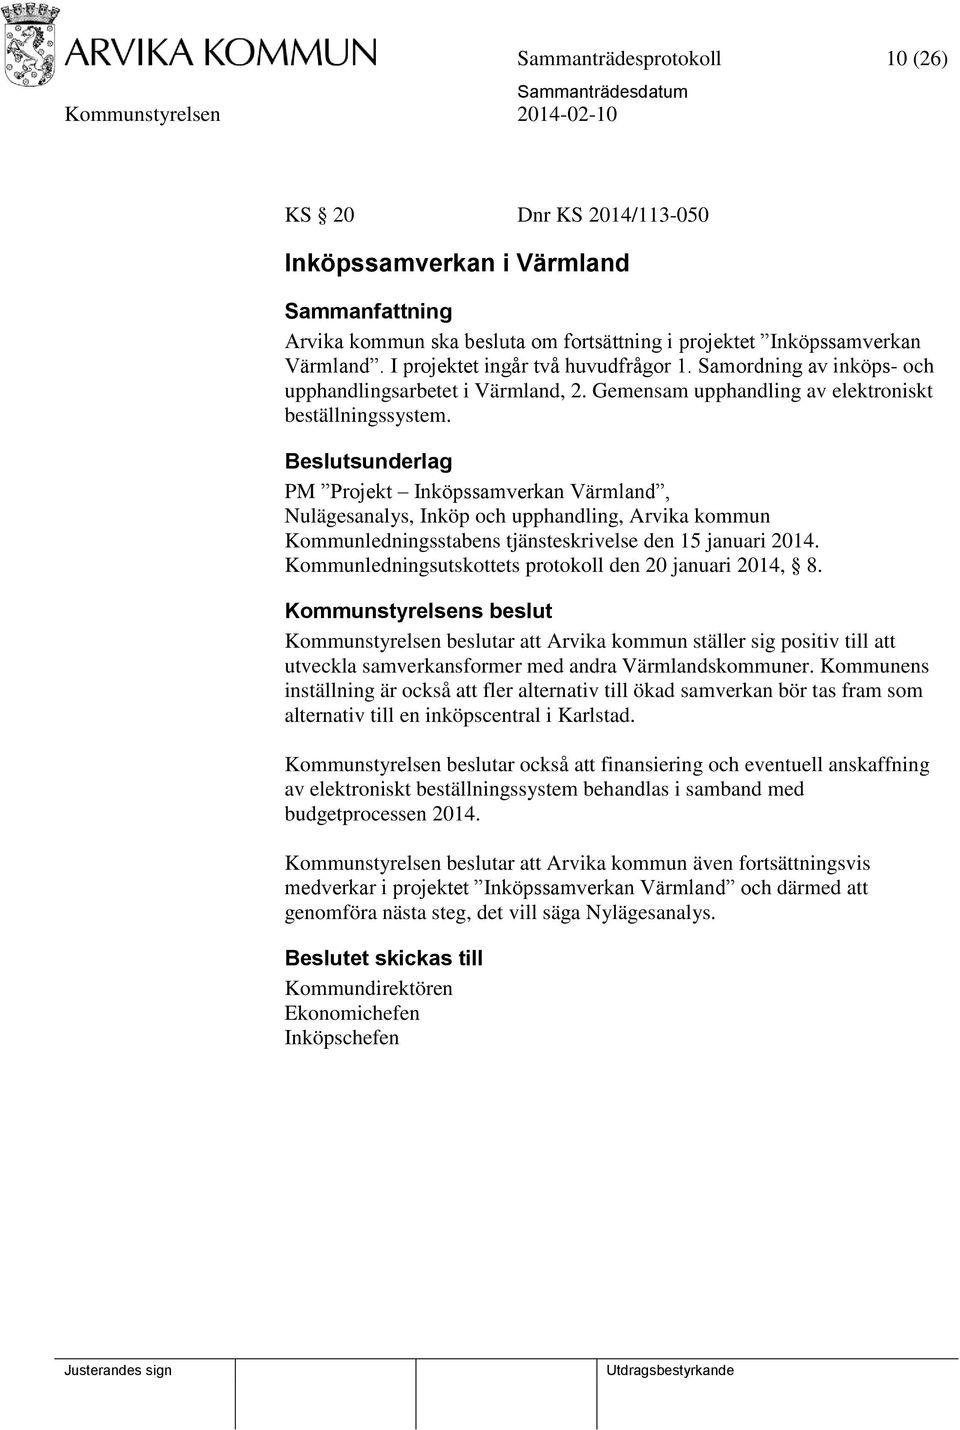 PM Projekt Inköpssamverkan Värmland, Nulägesanalys, Inköp och upphandling, Arvika kommun Kommunledningsstabens tjänsteskrivelse den 15 januari 2014.